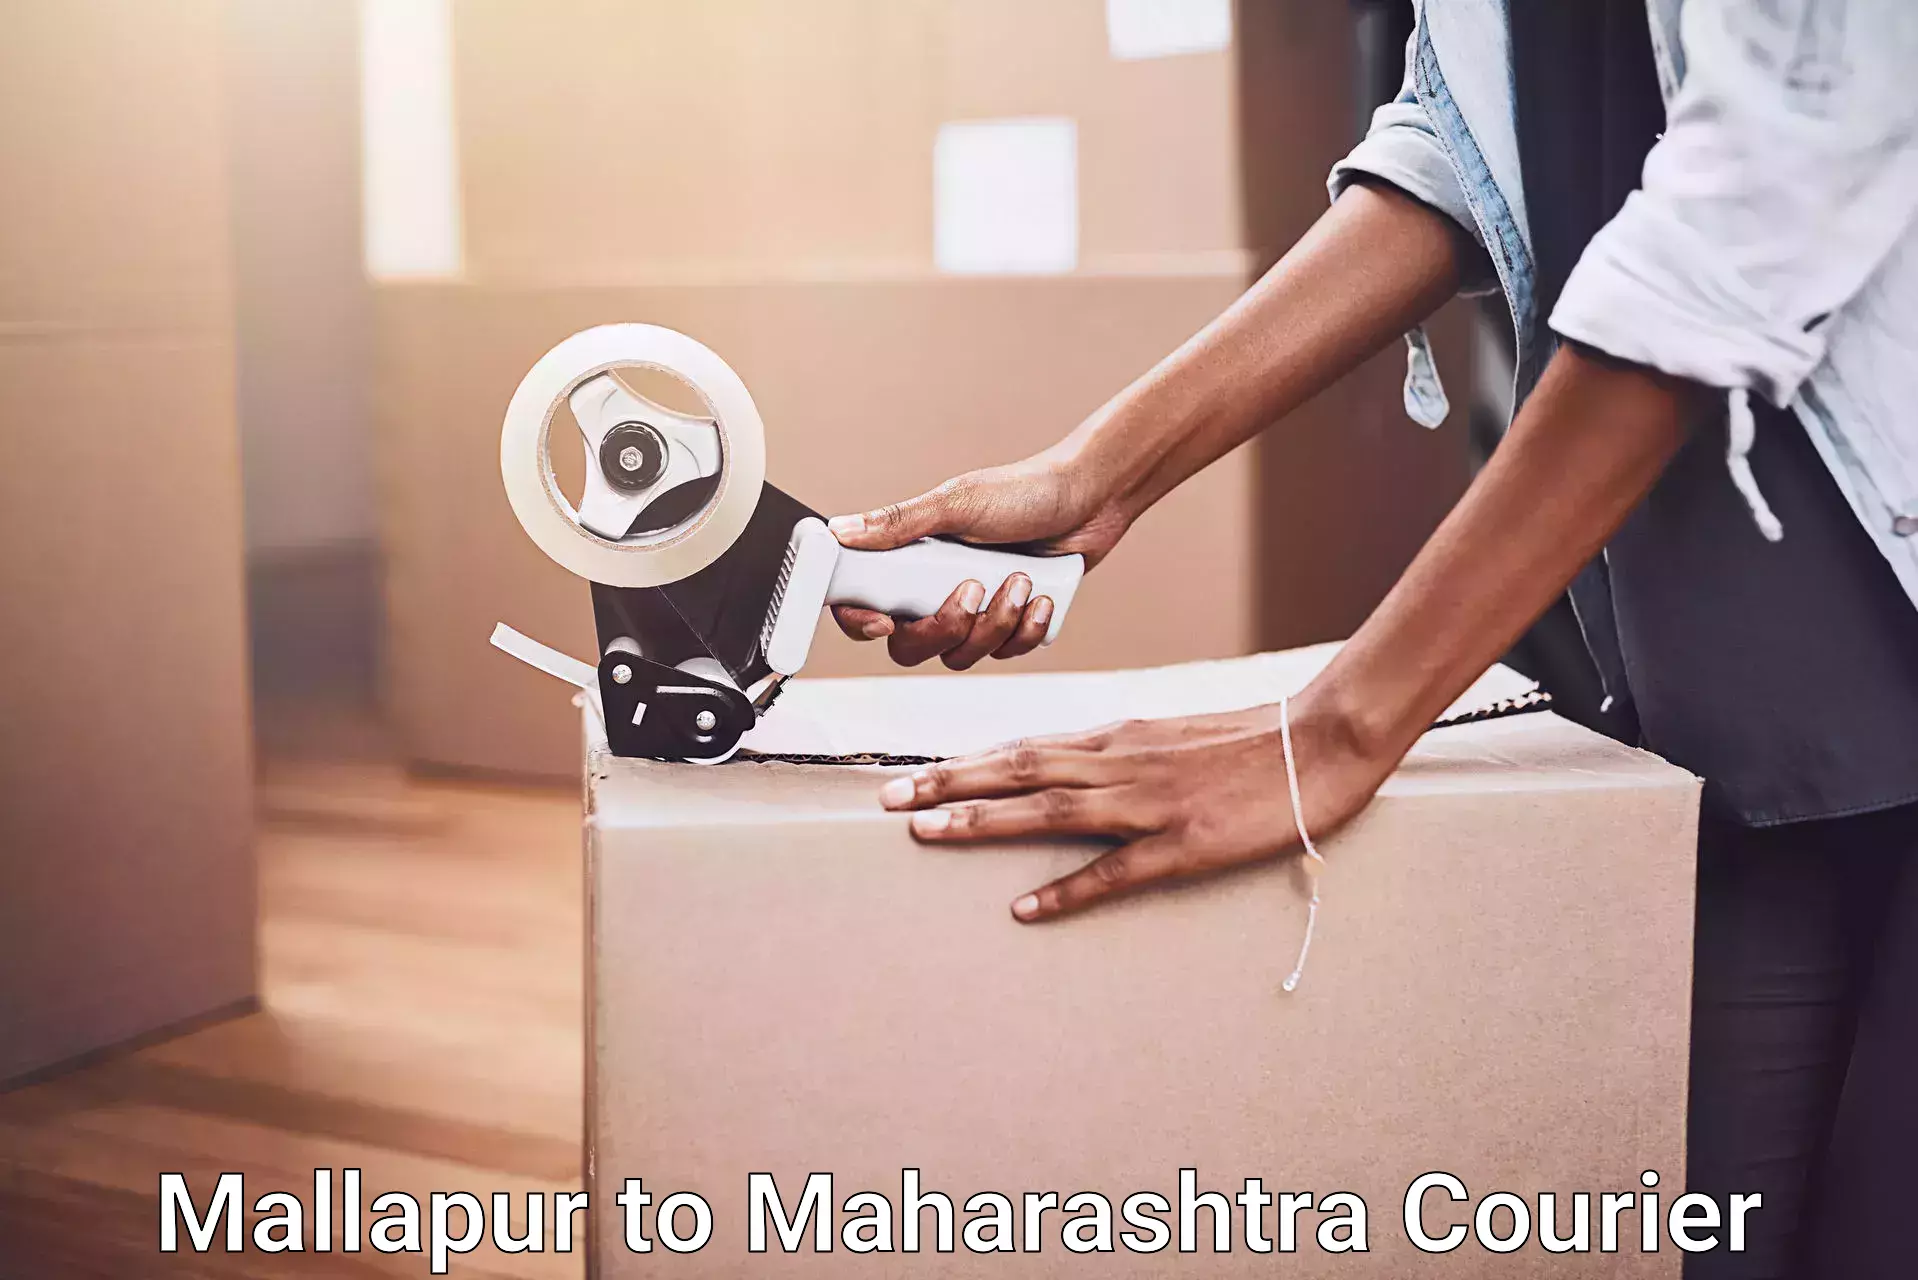 Home goods moving company Mallapur to Maharashtra